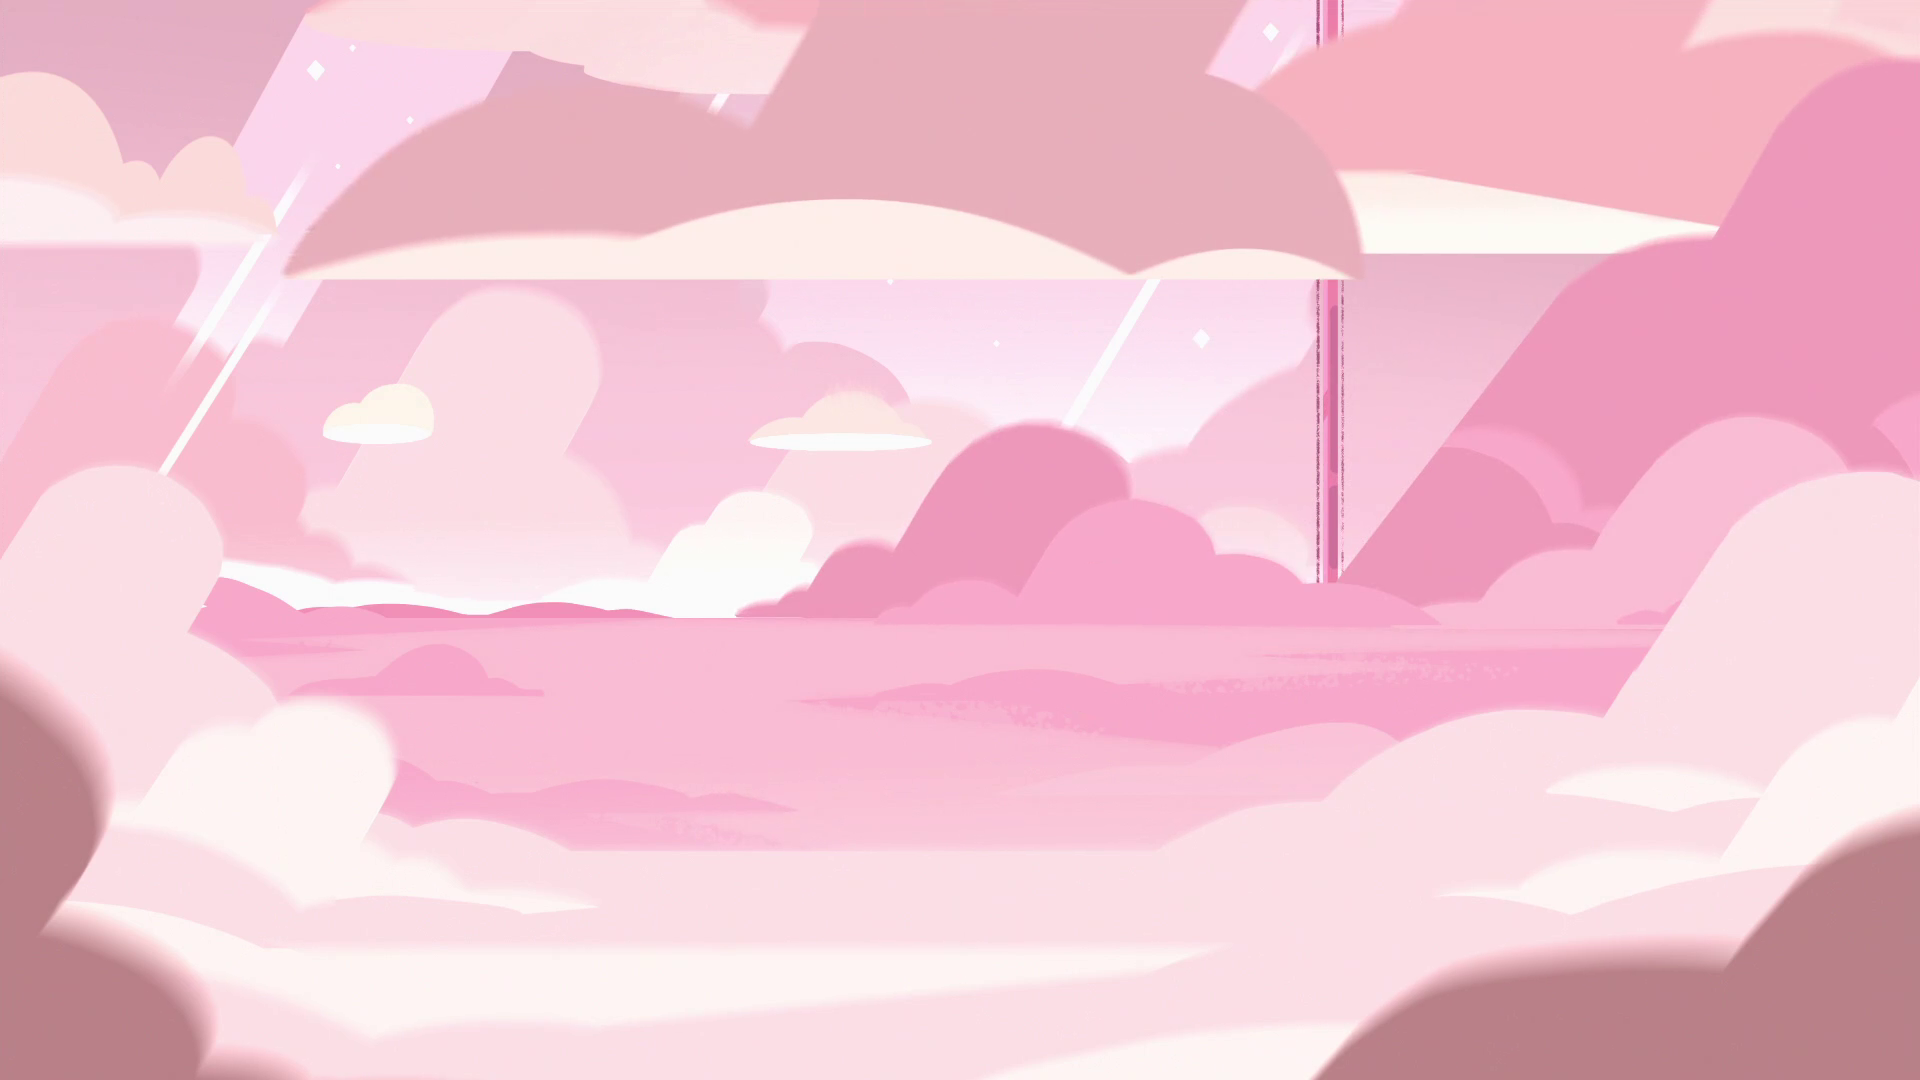 steven universum wallpaper,rosa,himmel,illustration,wolke,pflanze